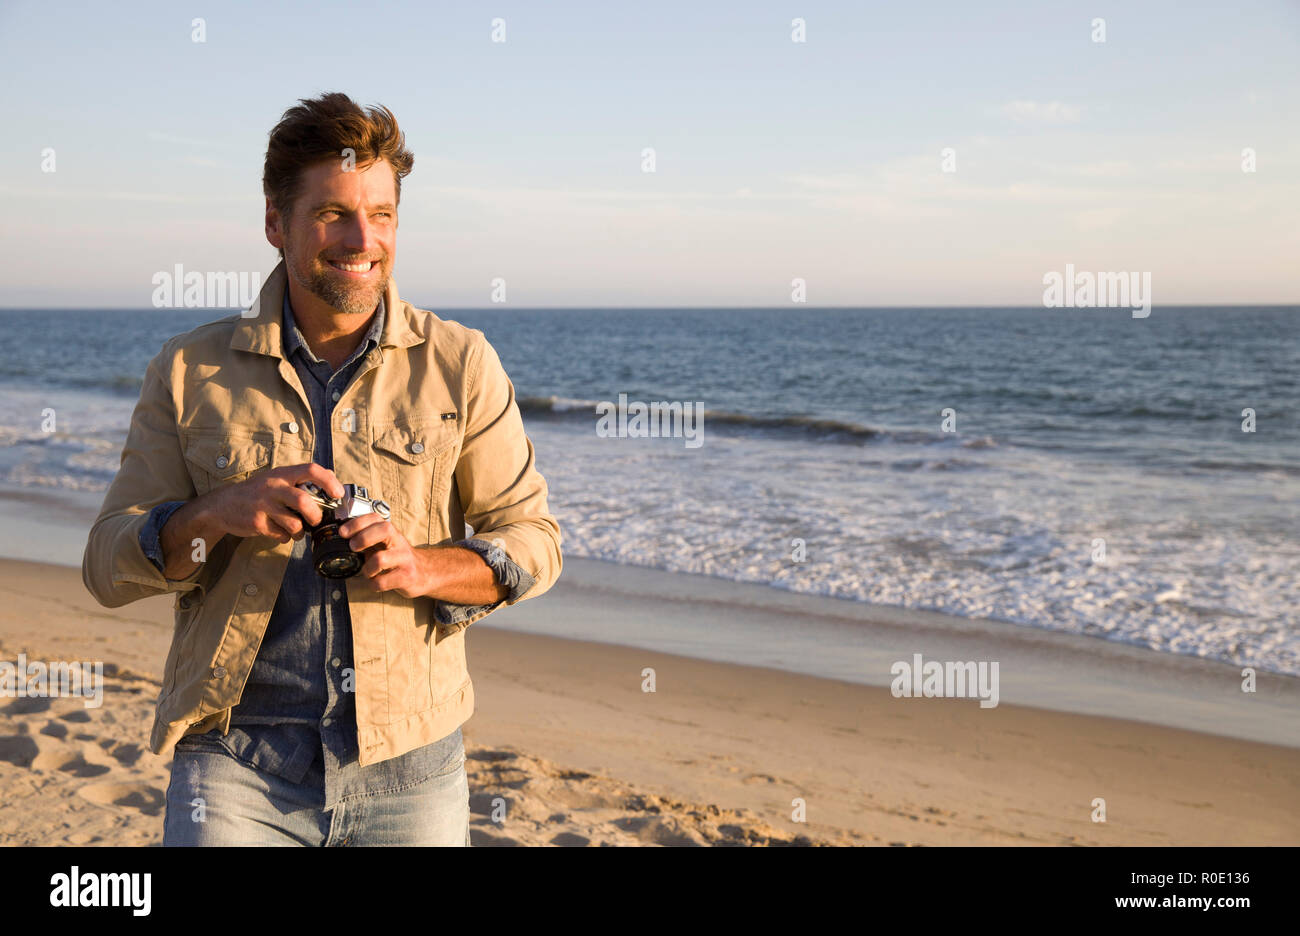 Half-Length Ritratto di sorridere Mid-Adult Uomo con fotocamera in spiaggia Foto Stock